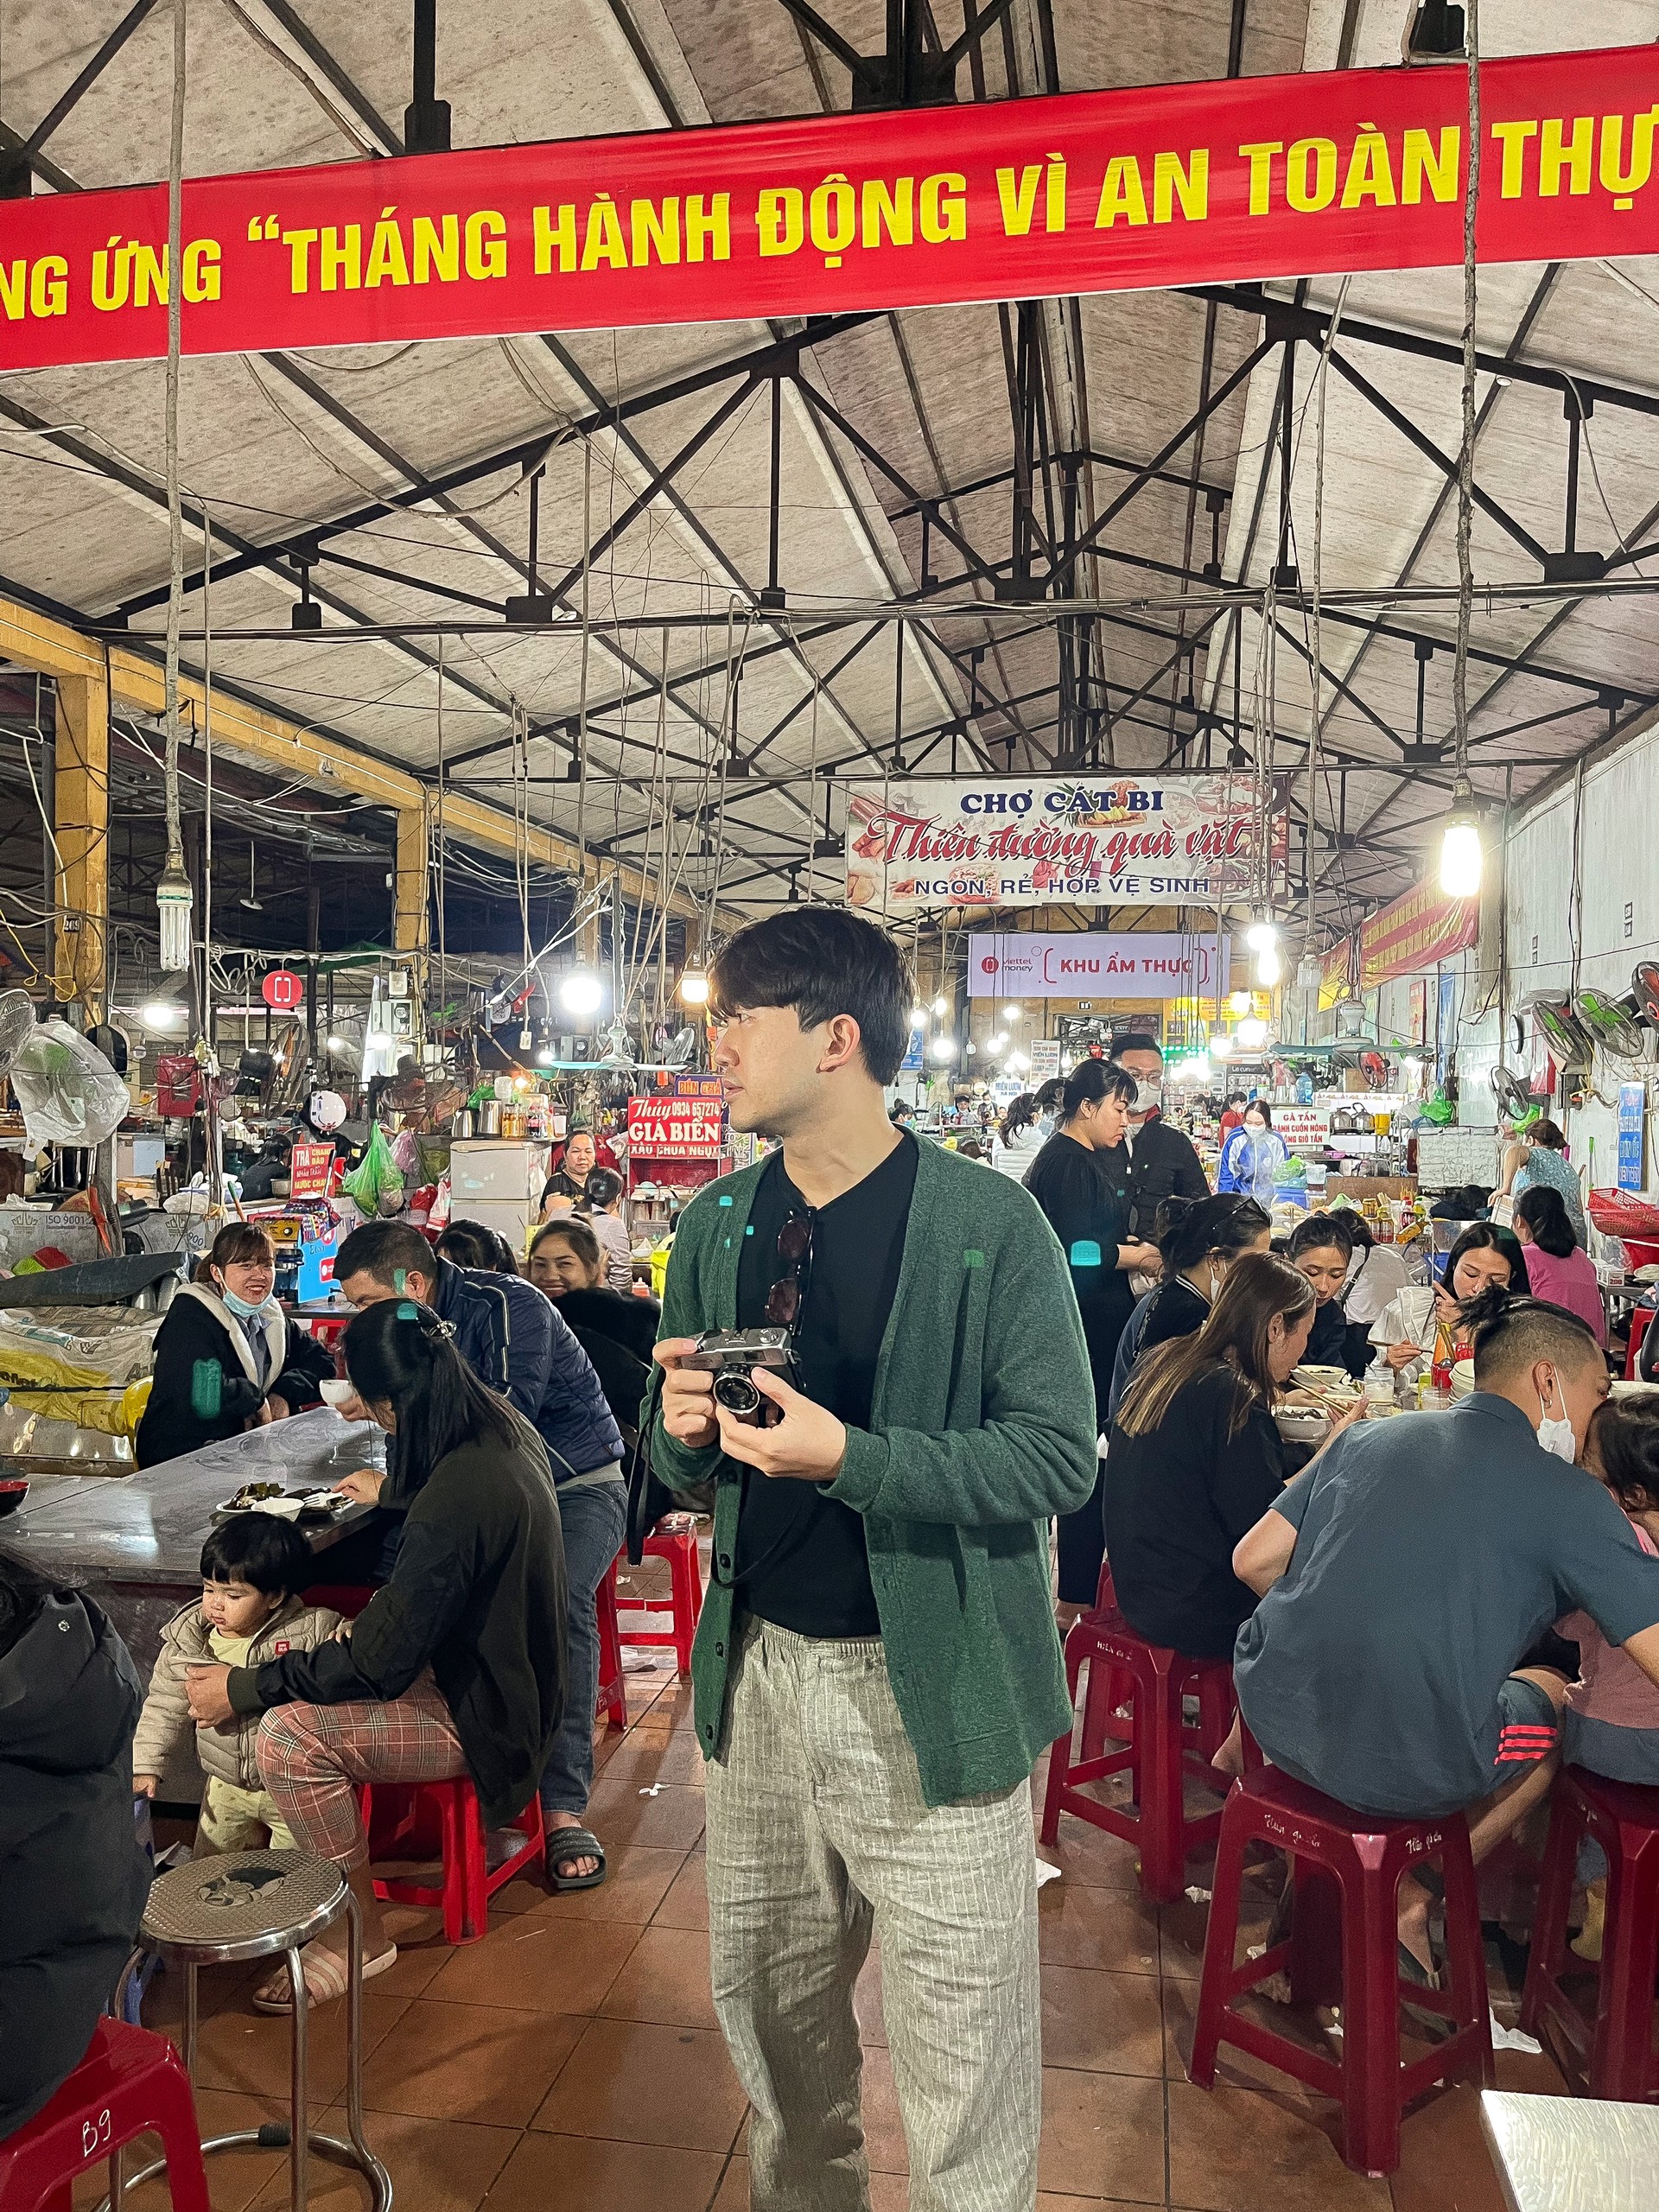 Sơn Tùng bên trong chợ Cát Bi - một tụ điểm ăn uống với nhiều quán ăn vặt ngon ở Hải Phòng. Ảnh: NVCC